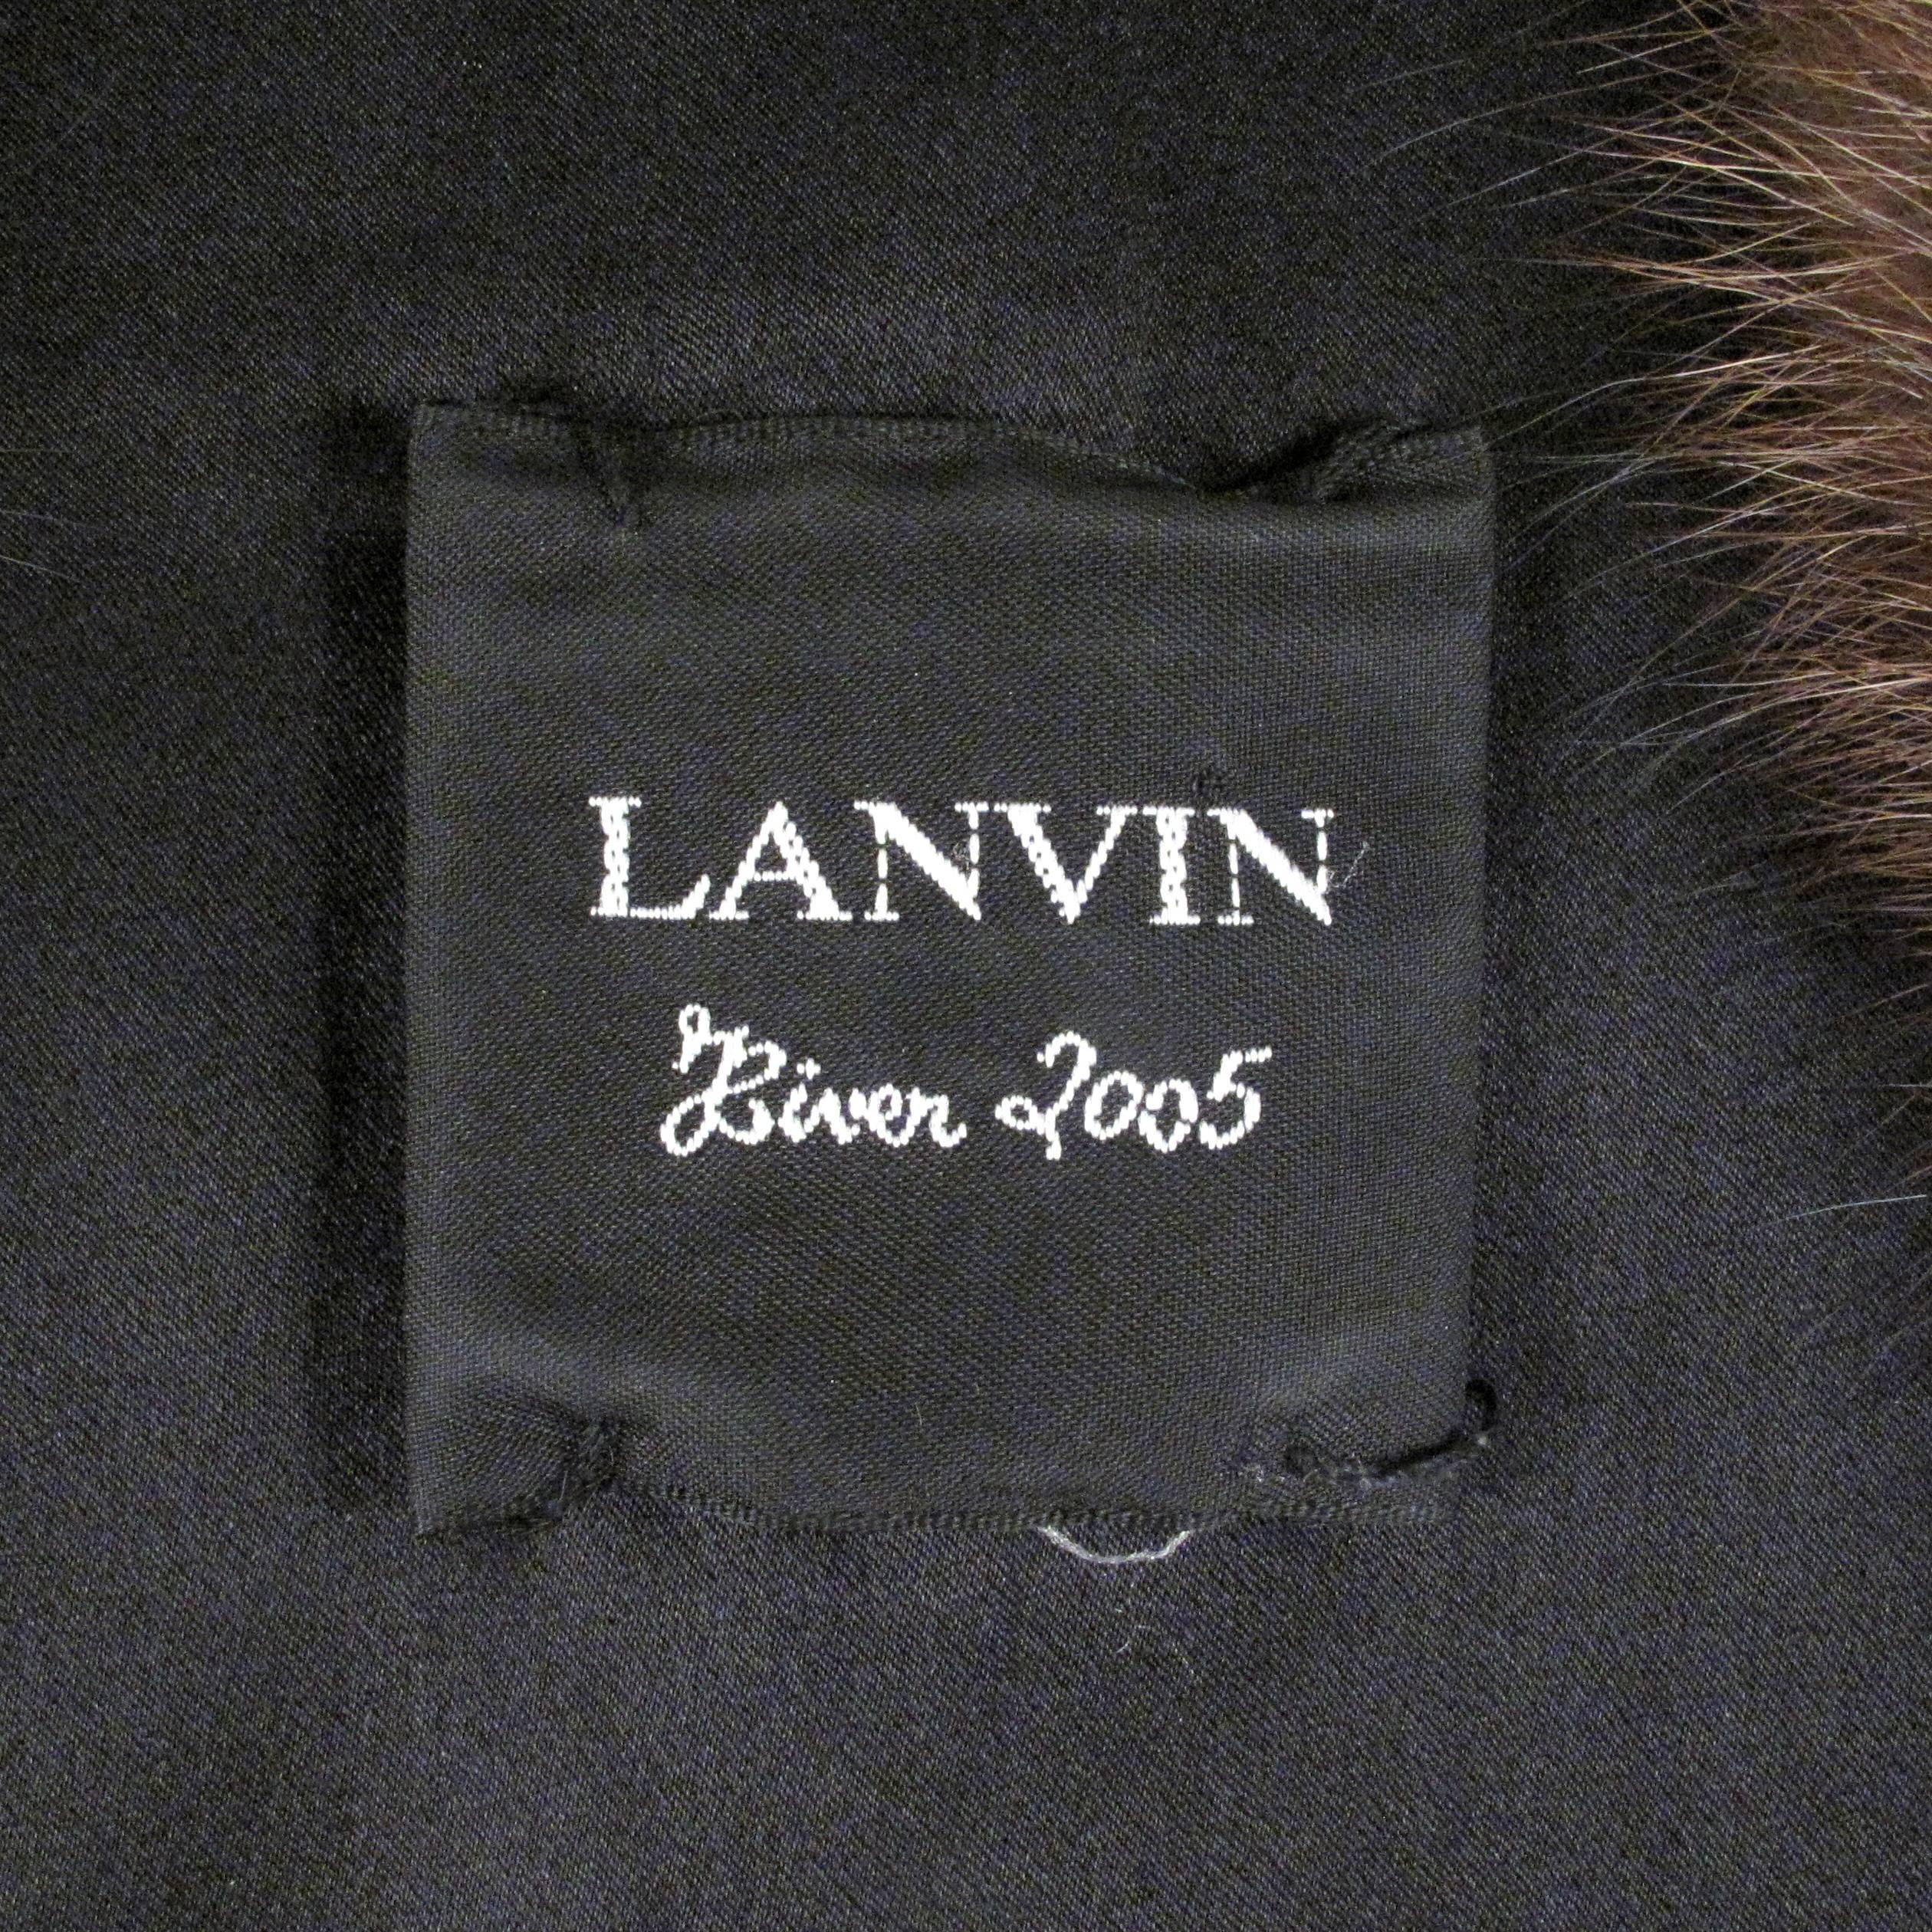 Lanvin Fur Shrug - US 8 - 40 - Brown Pekan FIsher Scarf Vest Coat Jacket 4